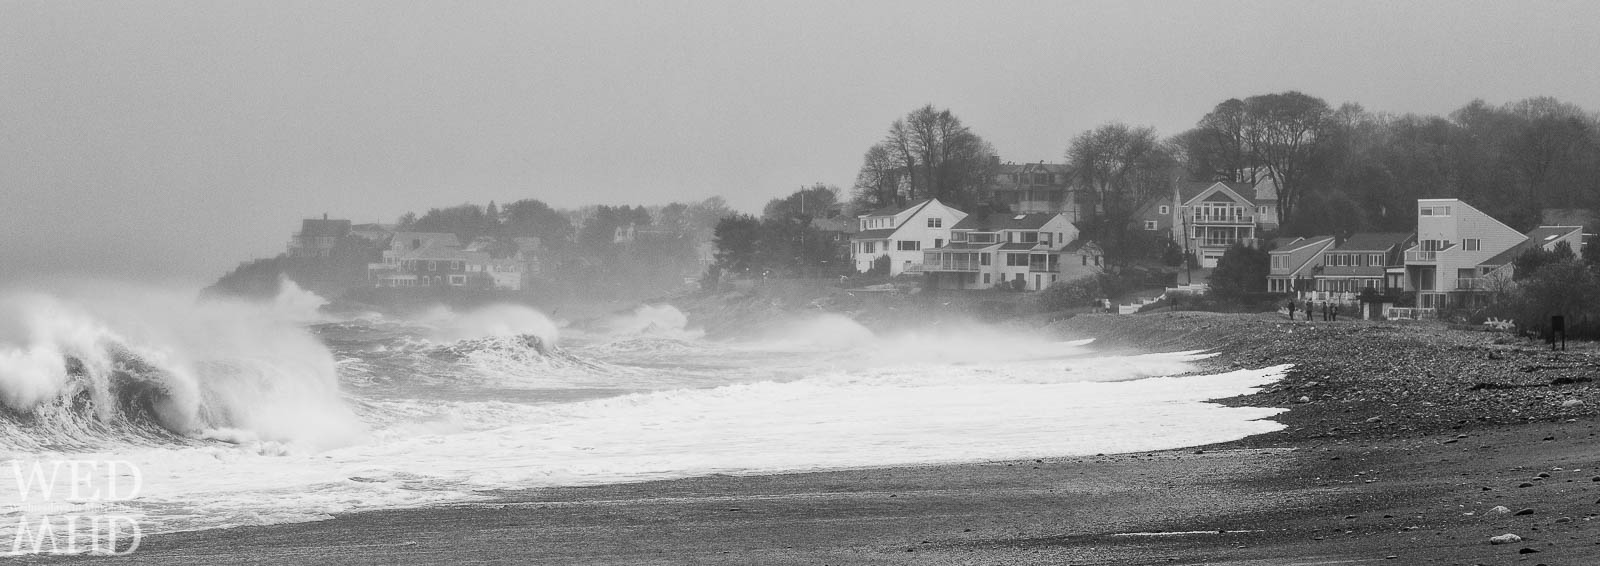 Hurricane Sandy Hits Marblehead